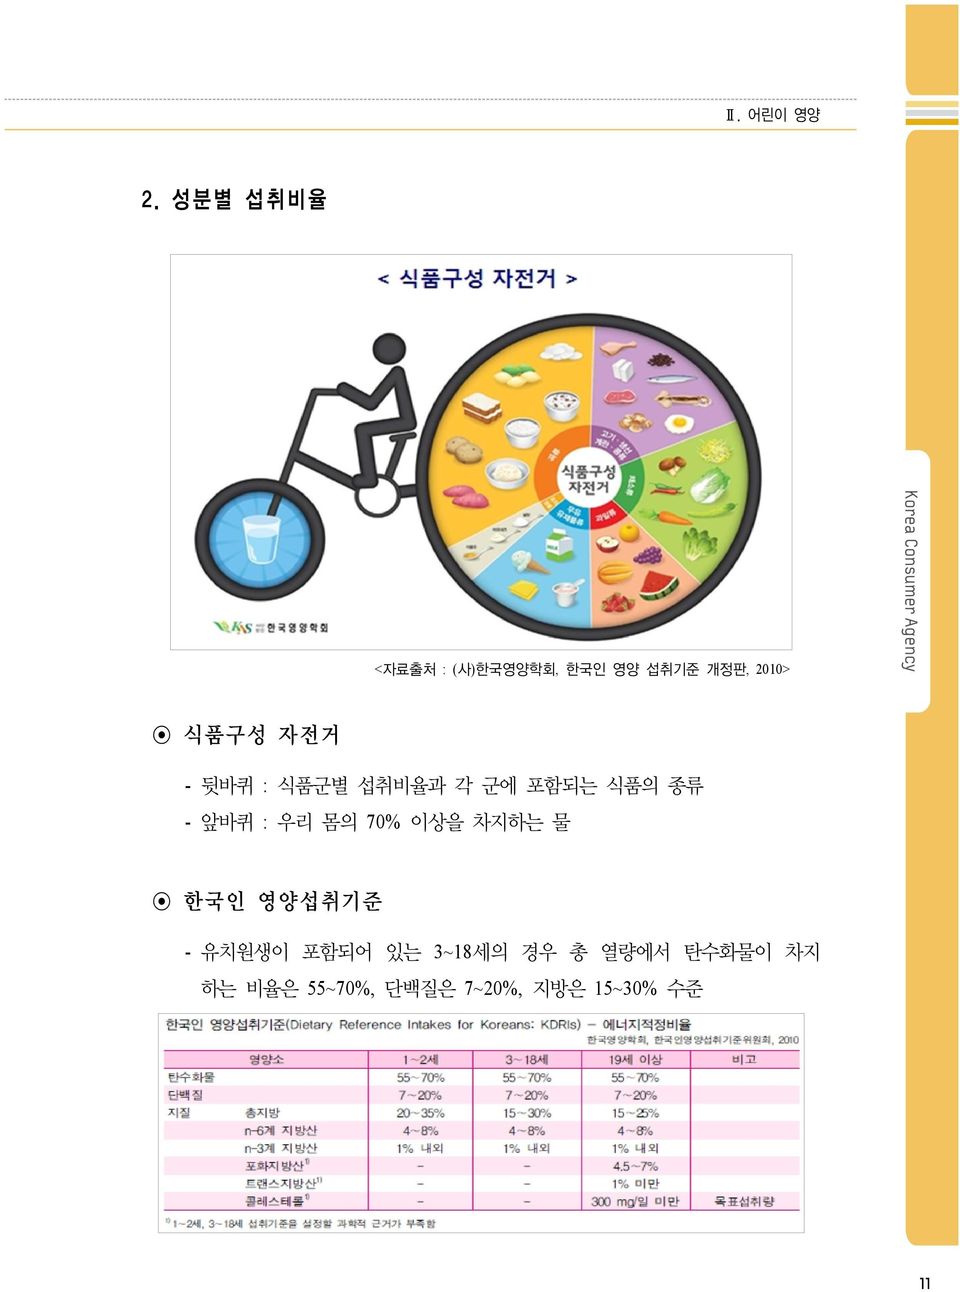 자전거 - 뒷바퀴 : 식품군별 섭취비율과 각 군에 포함되는 식품의 종류 - 앞바퀴 : 우리 몸의 70%